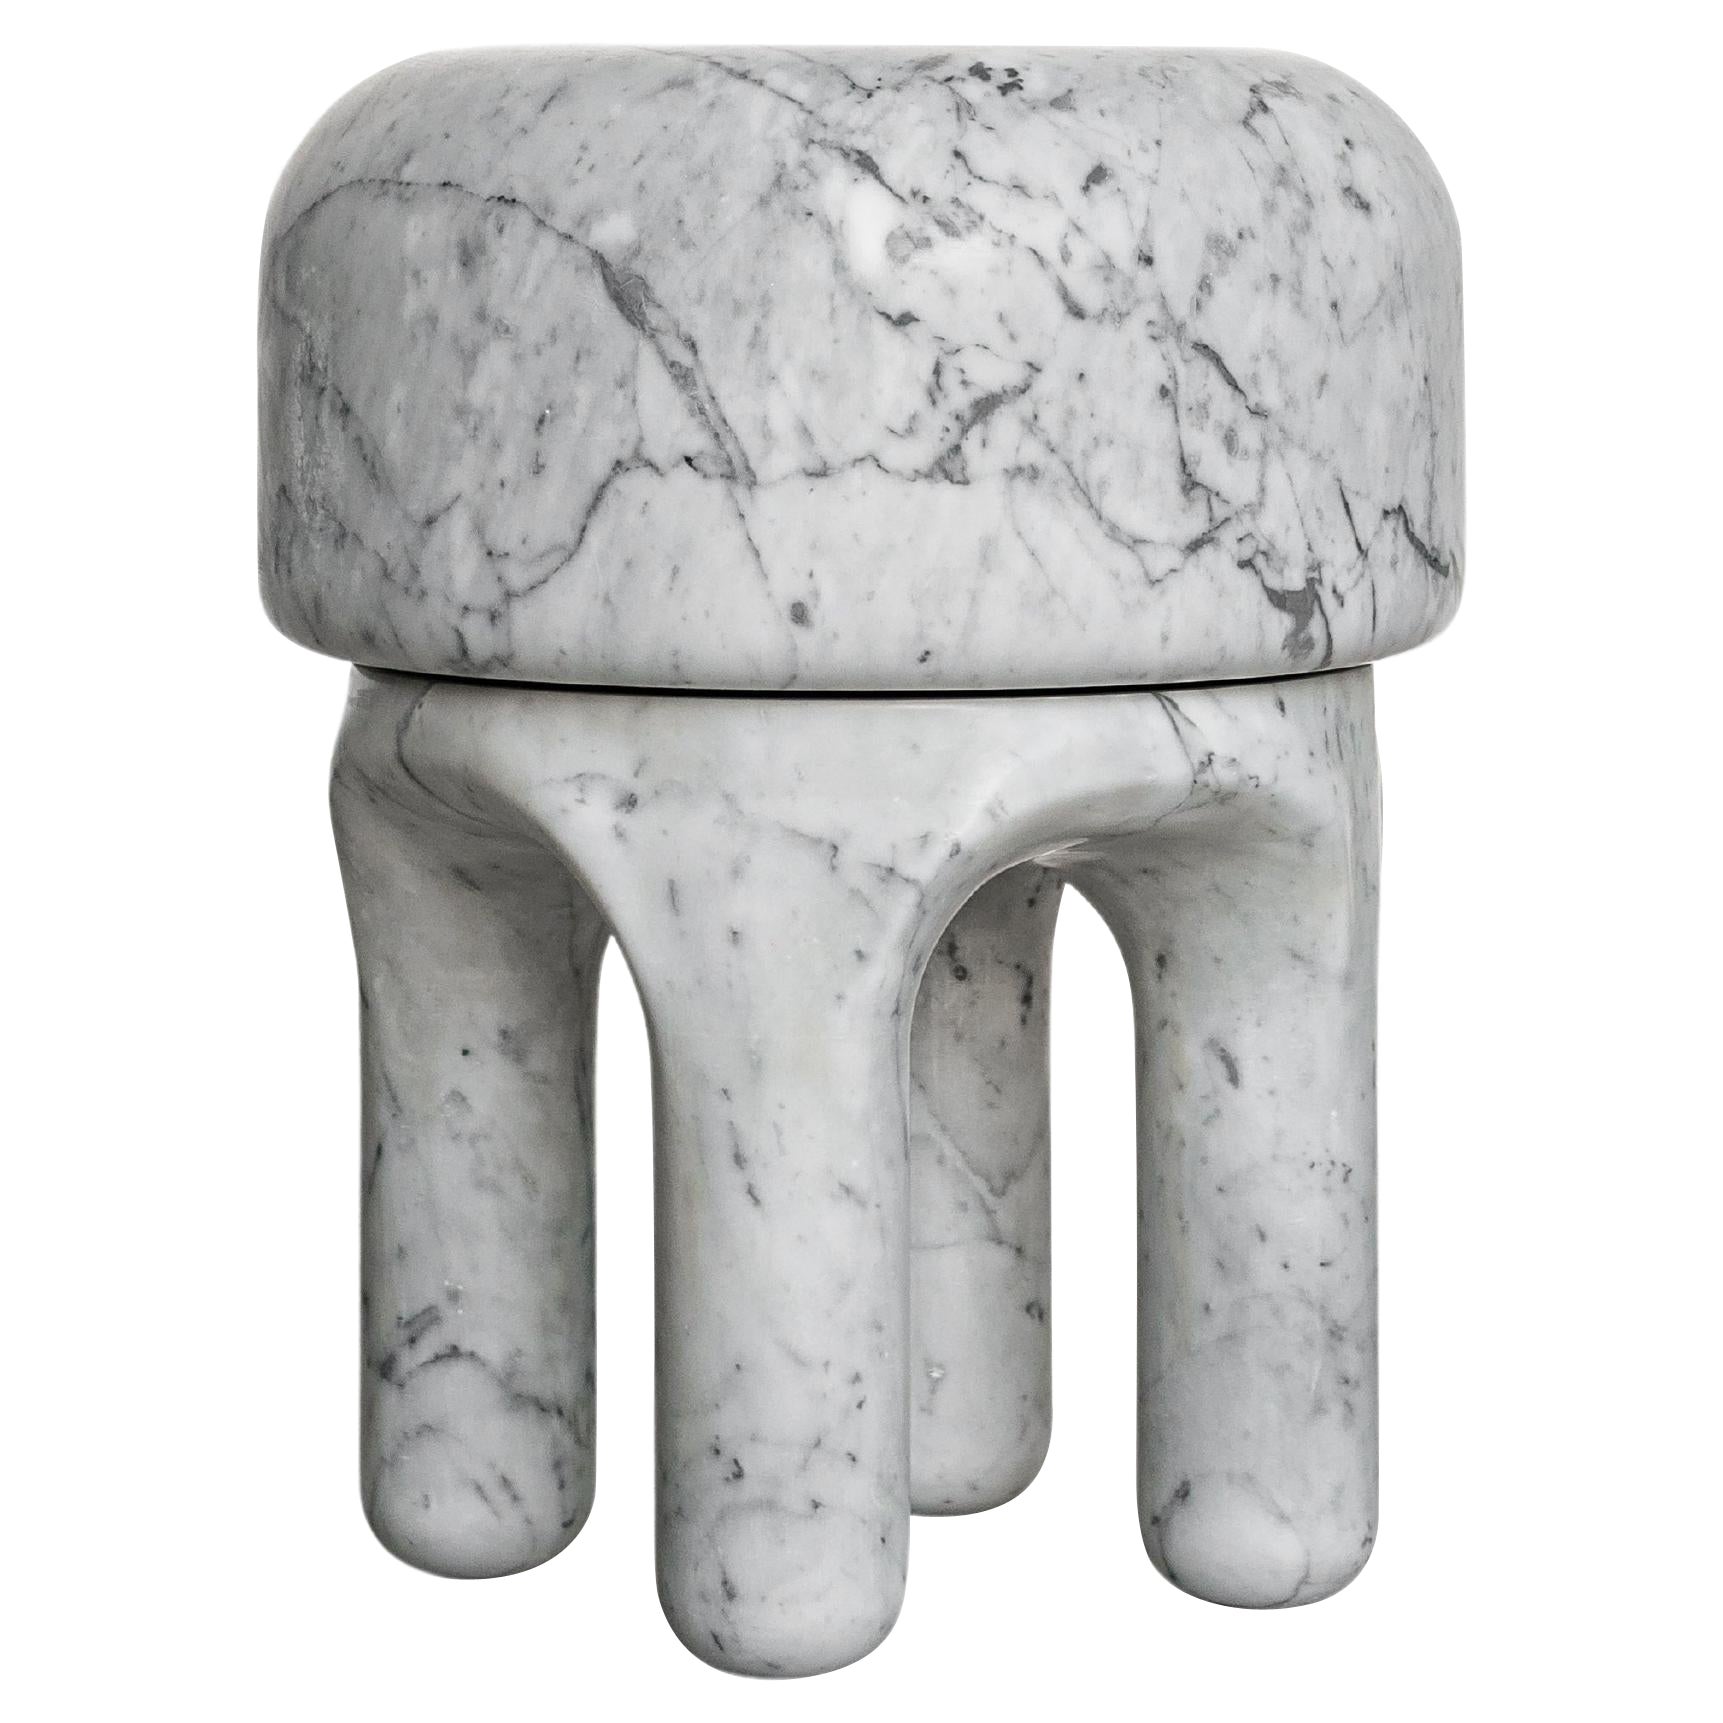 Table d'appoint en marbre blanc de Carrare, design italien de collection en vente